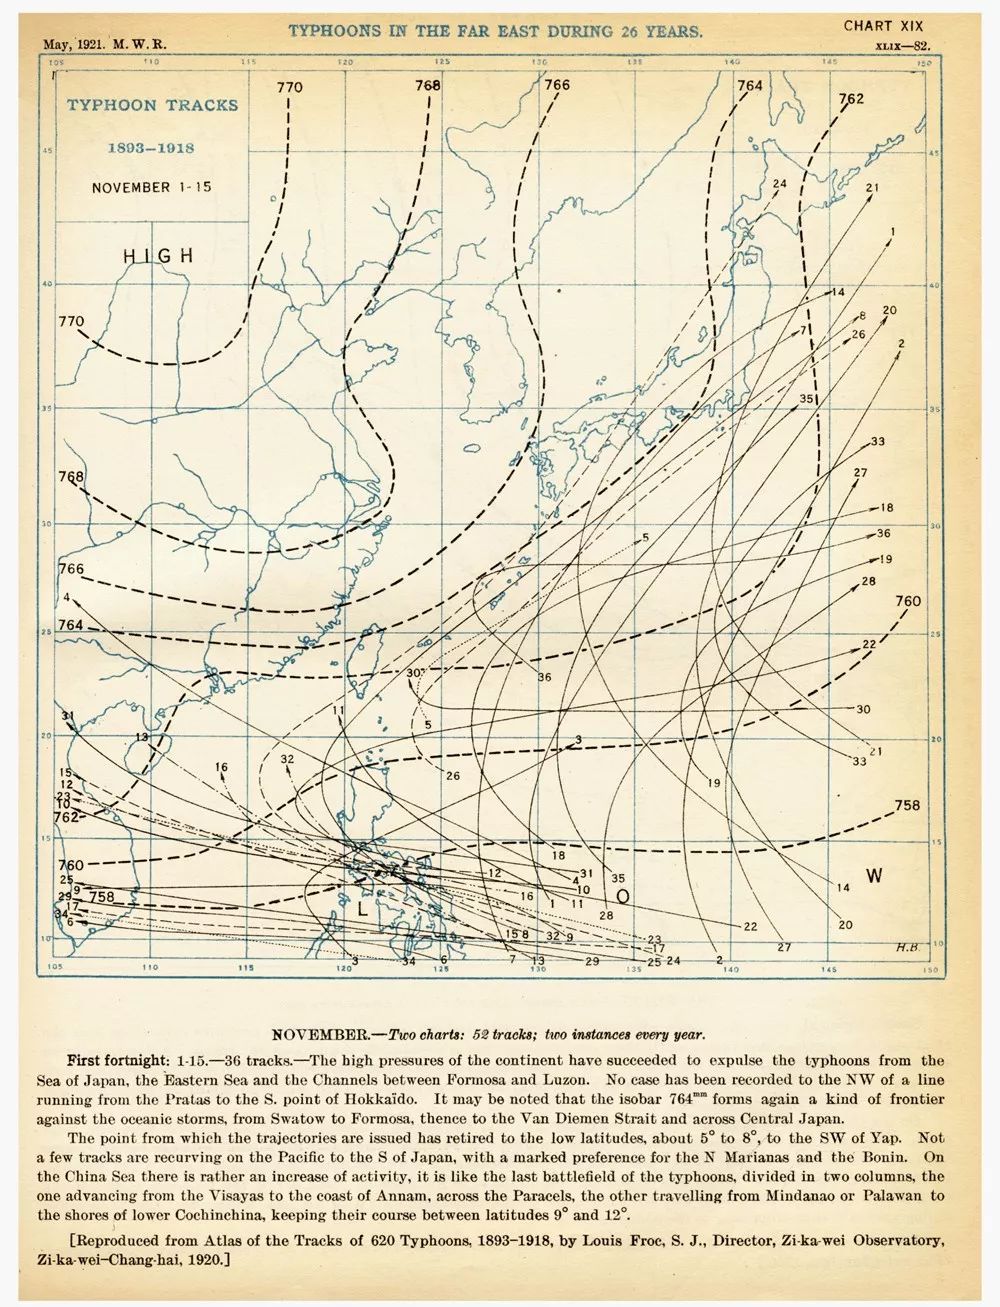 徐家汇观象台台长劳积勋主持编著的 Atlas of the Tracks of 620 Typhoons 1893—1918记录大量珍贵资料。图为书中一幅远东地区26年间台风路径图。